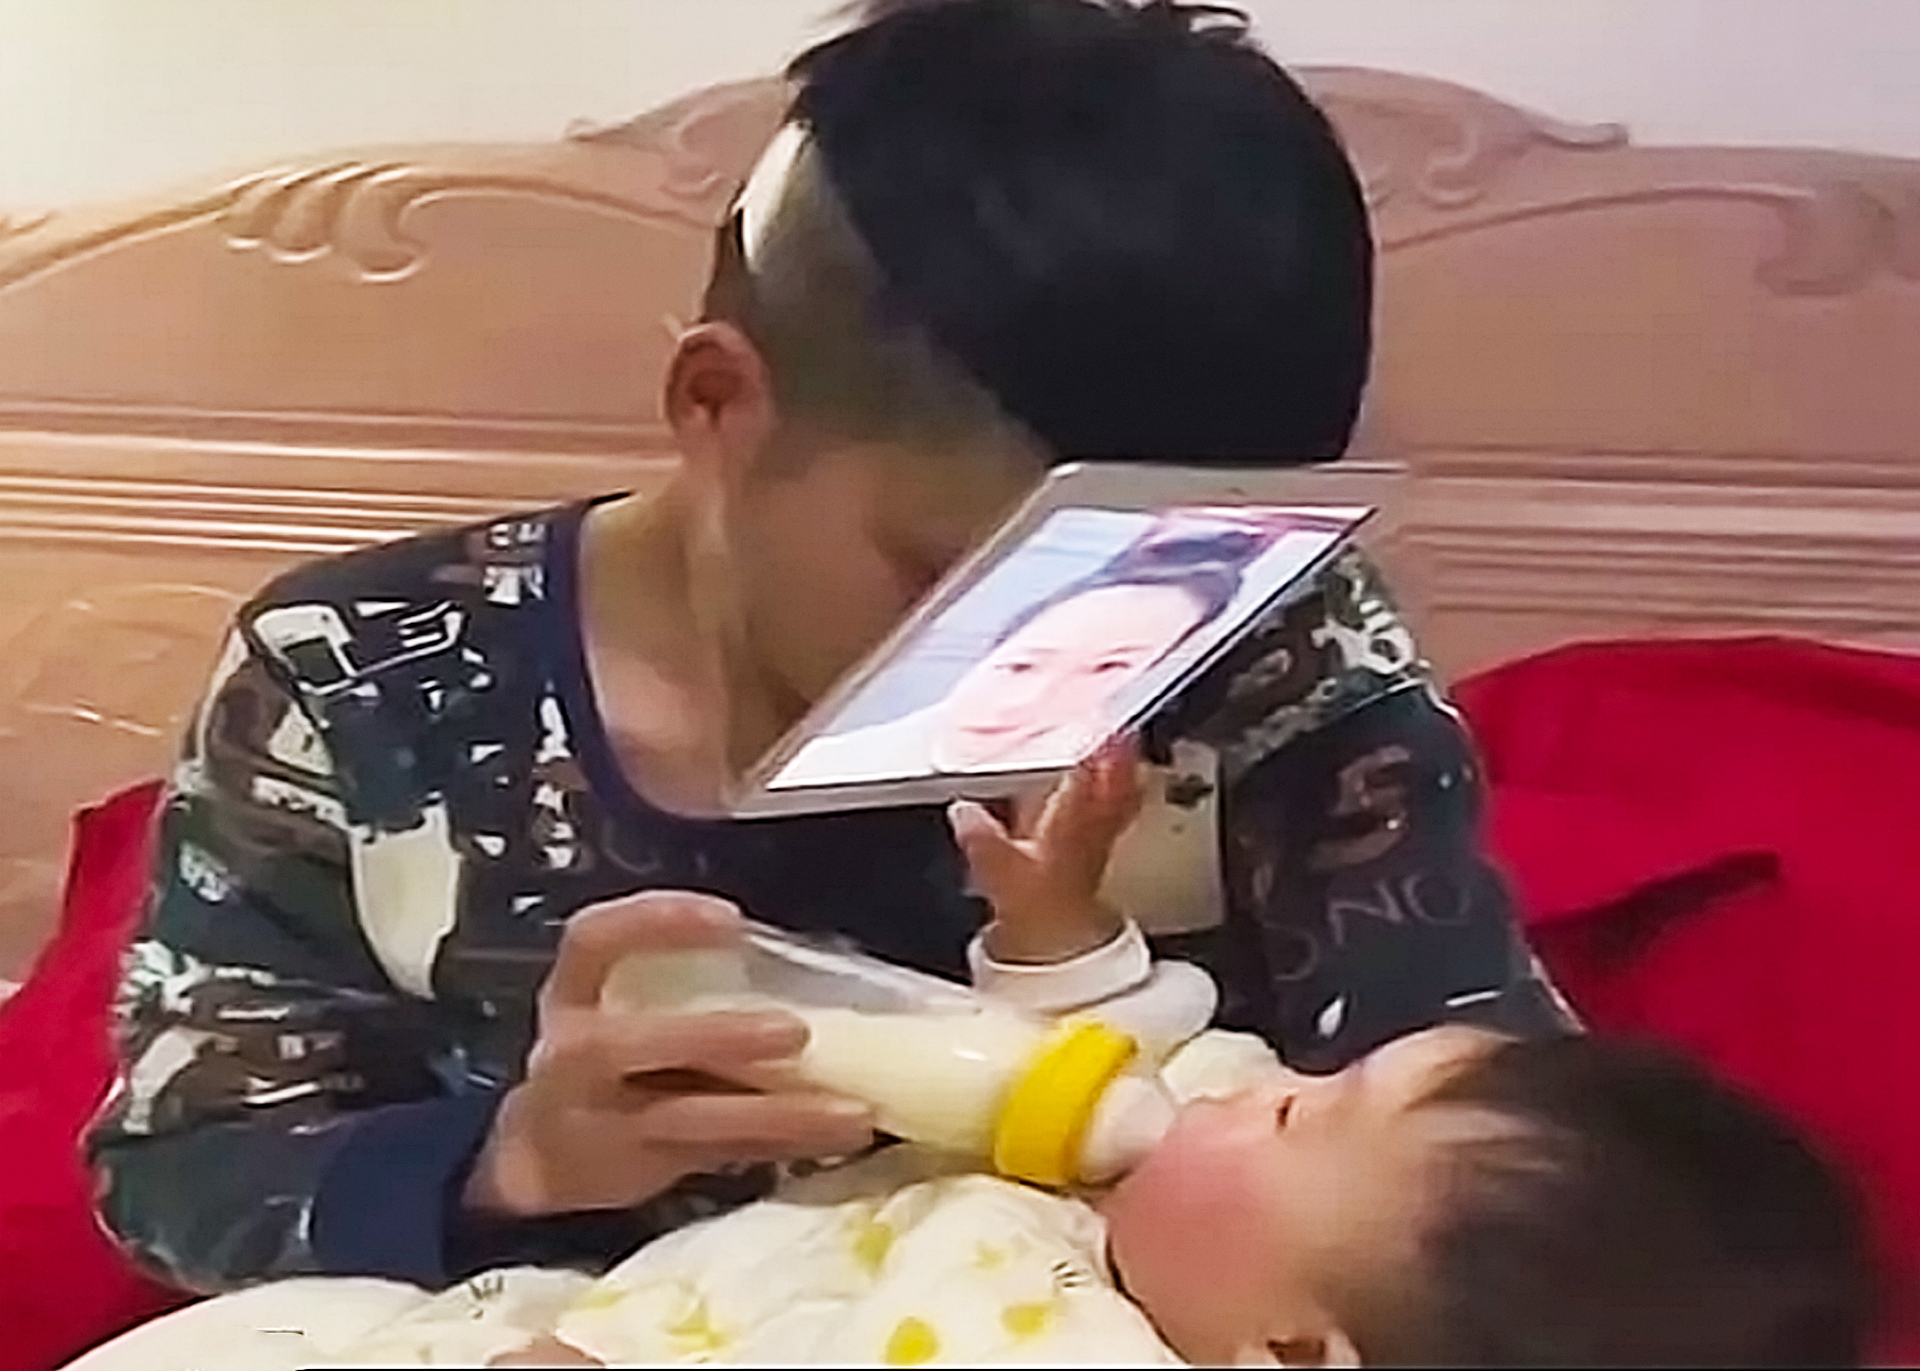 Agar Bayinya Mau Menyusu, Pria Ini Gantungkan Smartphone Gambar Wajah Istrinya di Depan Wajahnya